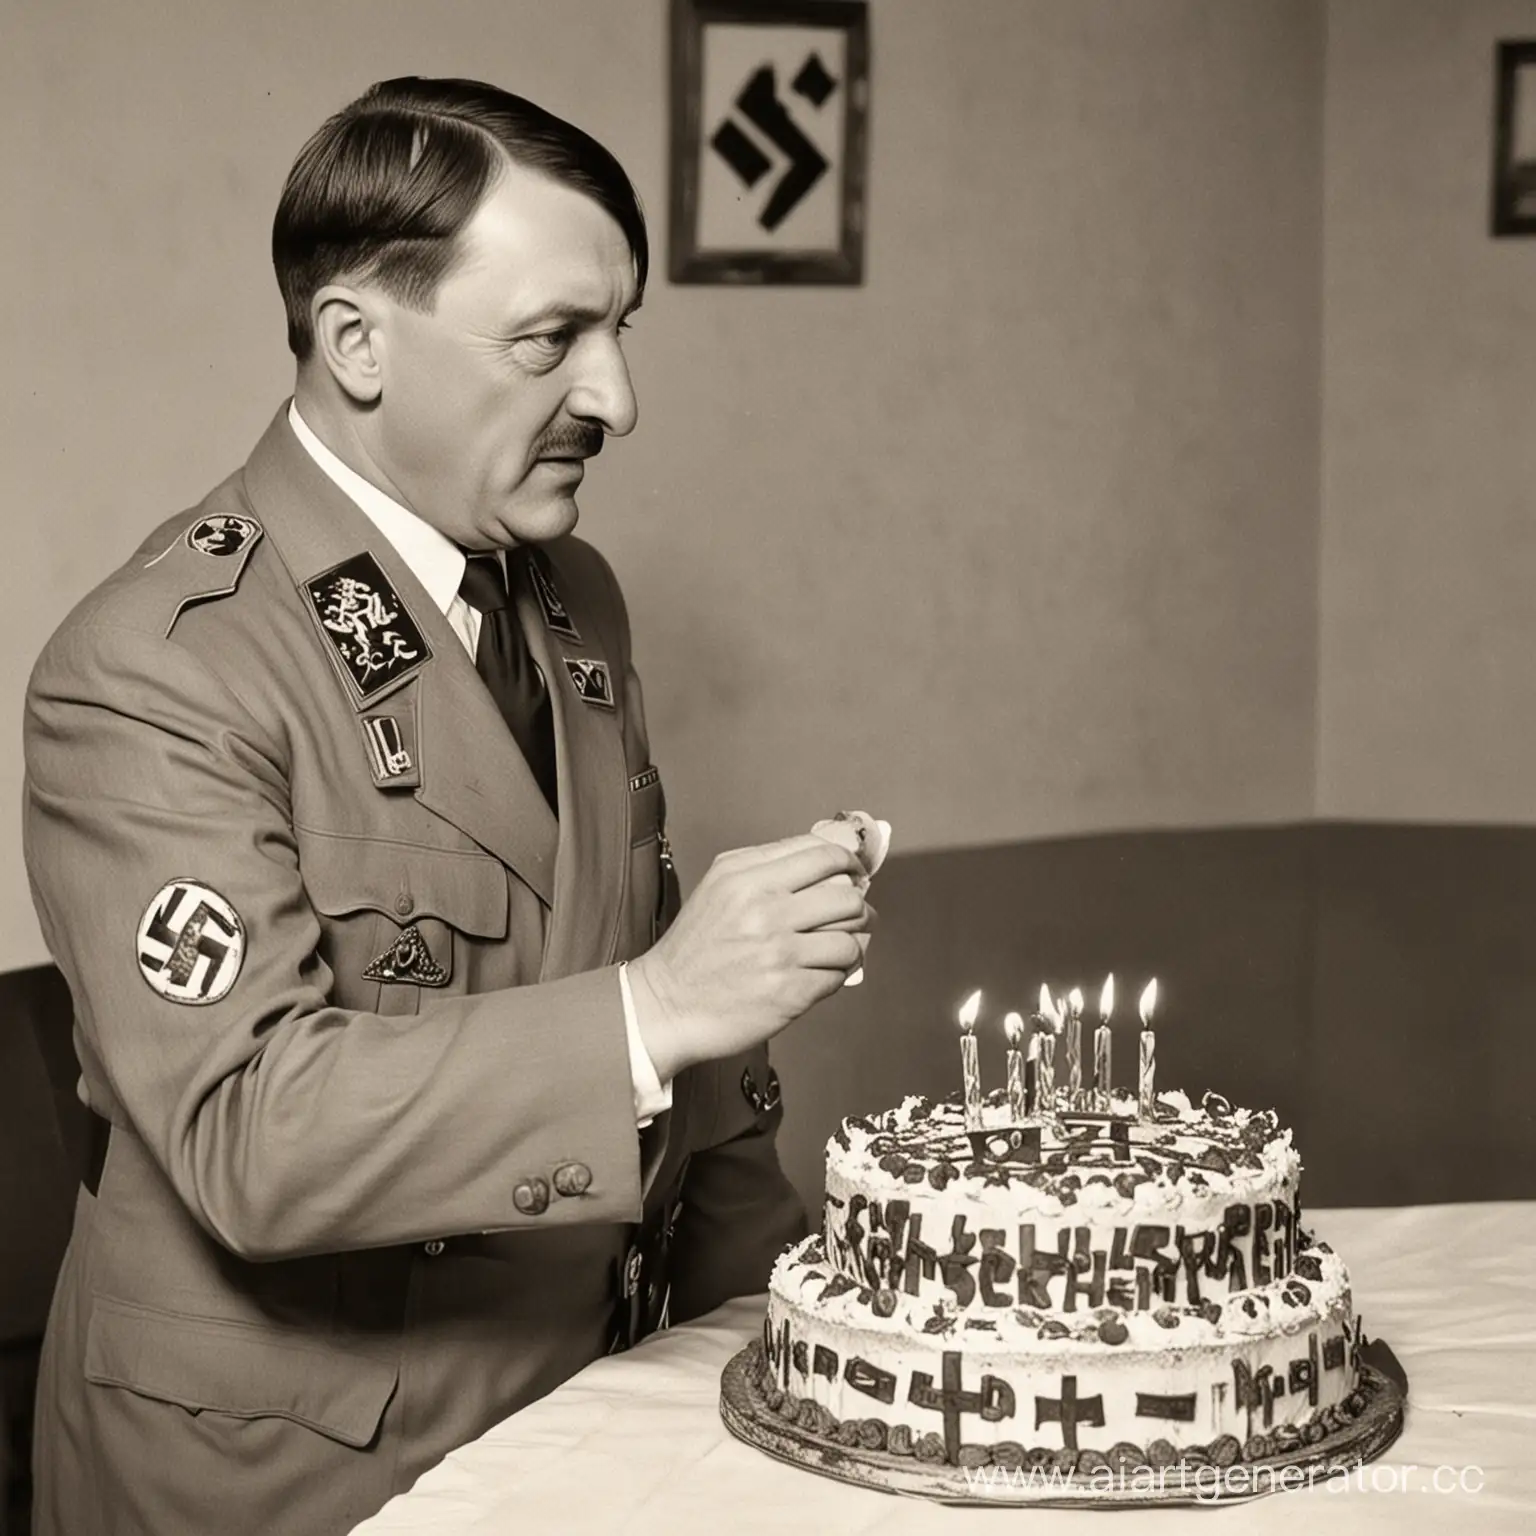 Гитлер у которого в руках торт с нацисткой символикой и надписью спереди:" Kirill Parneov" поздравляет с днем рождением
